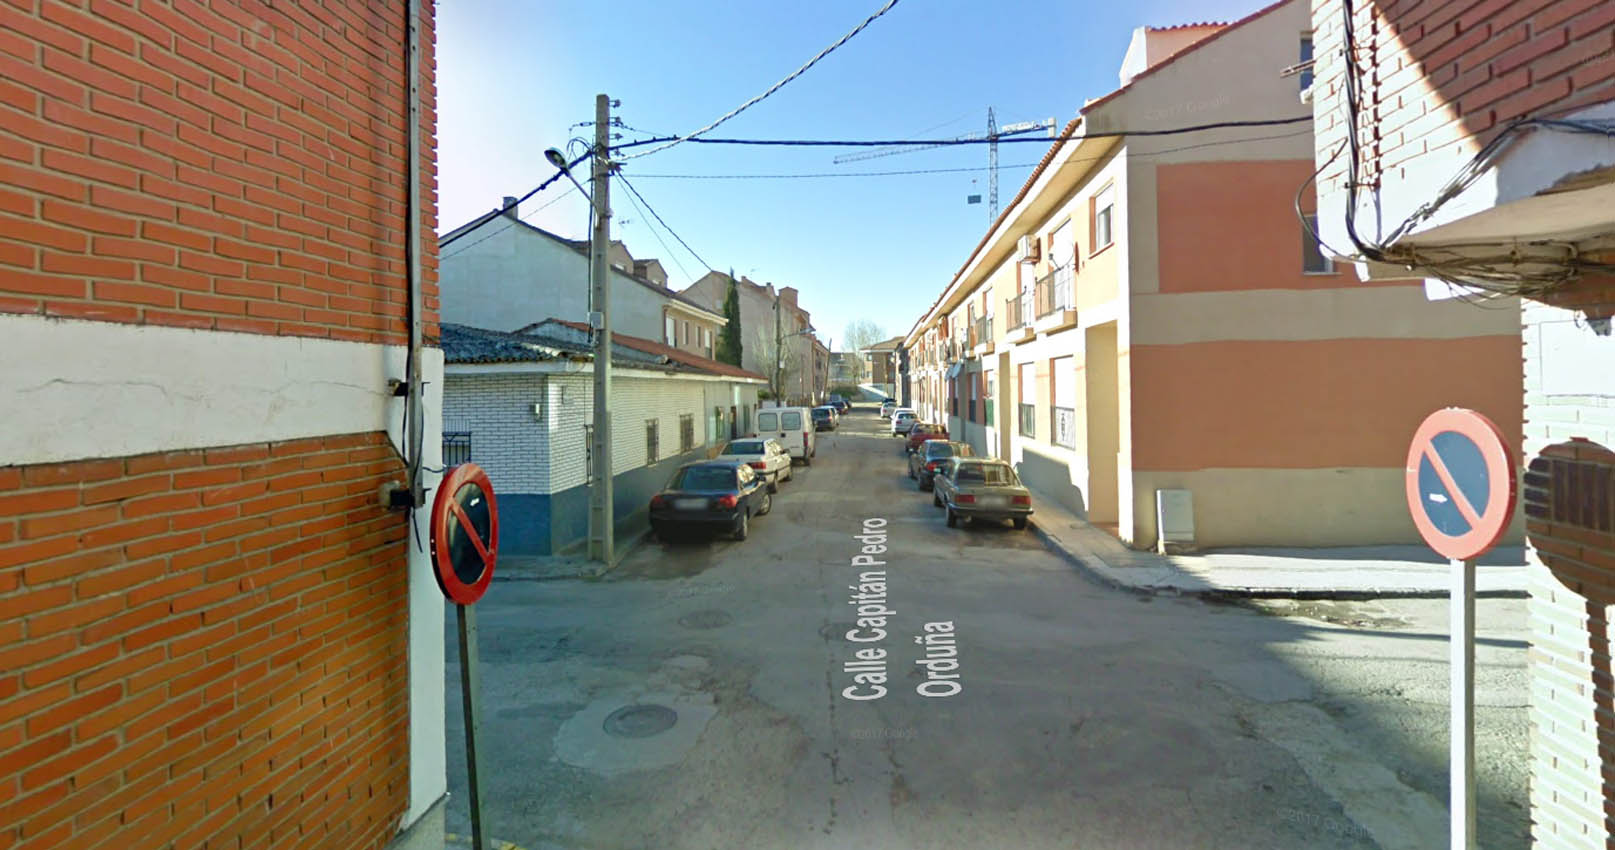 La agresión se ha producido en una vivienda de la calle Capitán Pedro Orduño, en Yeles.